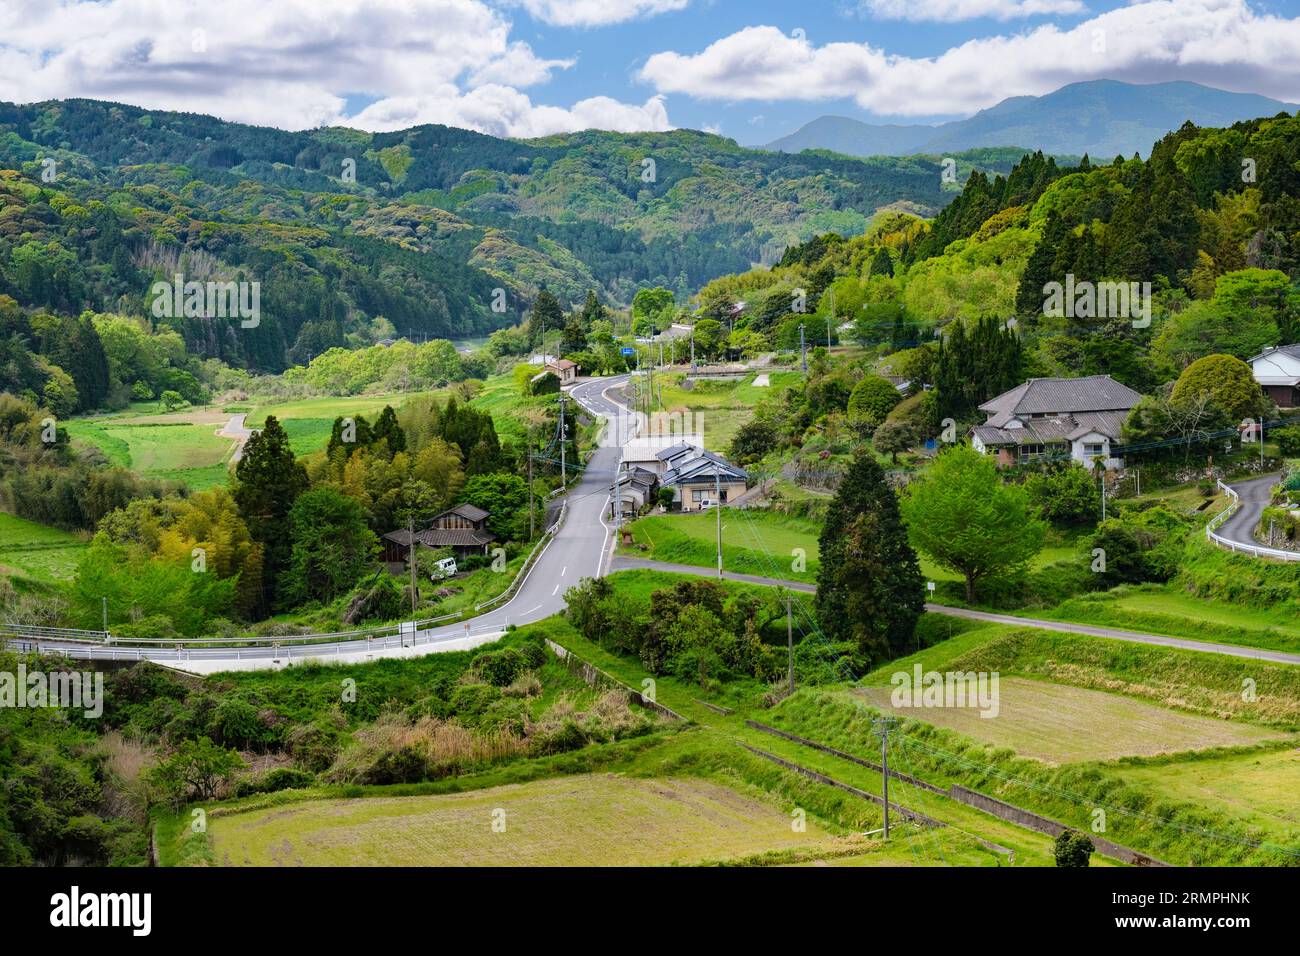 Japan, Kyushu. Malerischer Blick vom Trail in der Nähe des Yayama Mountain auf dem Weg zum Choan-JI-Tempel. Stockfoto